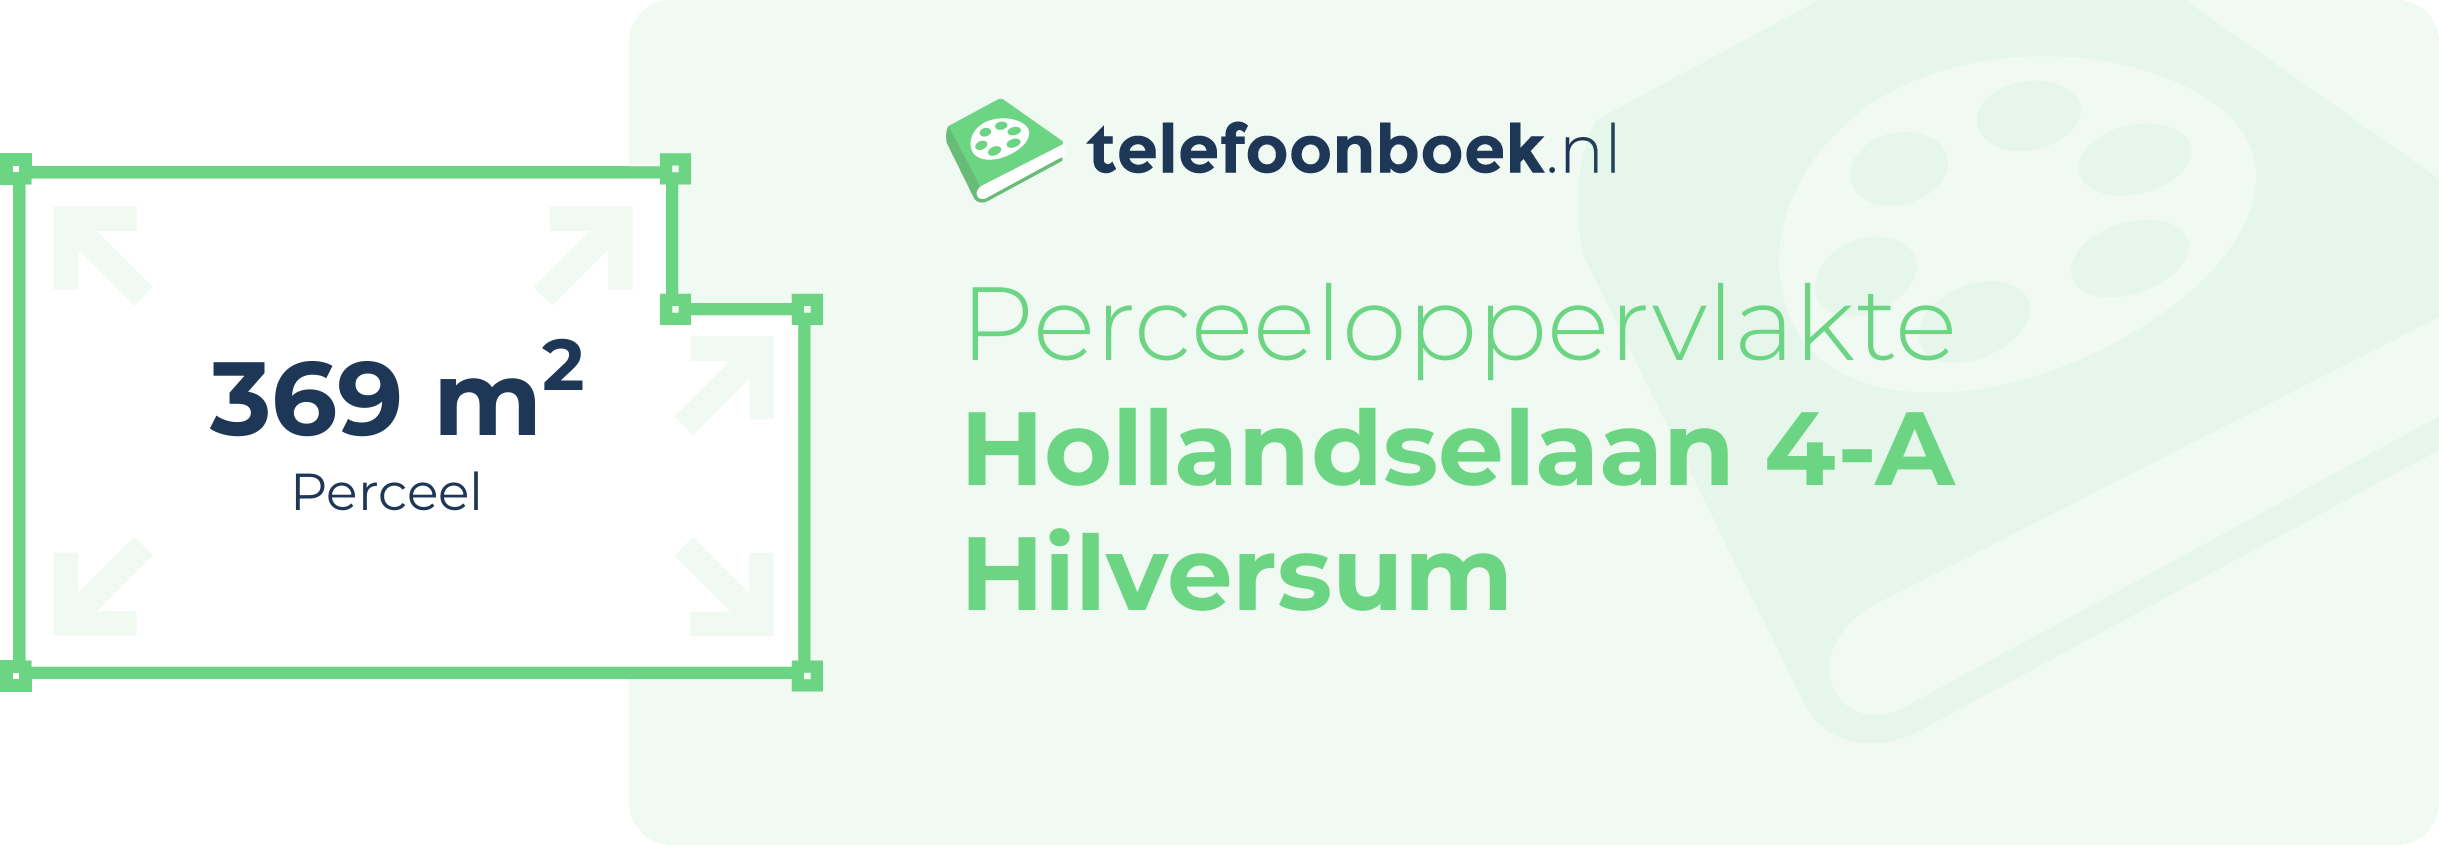 Perceeloppervlakte Hollandselaan 4-A Hilversum